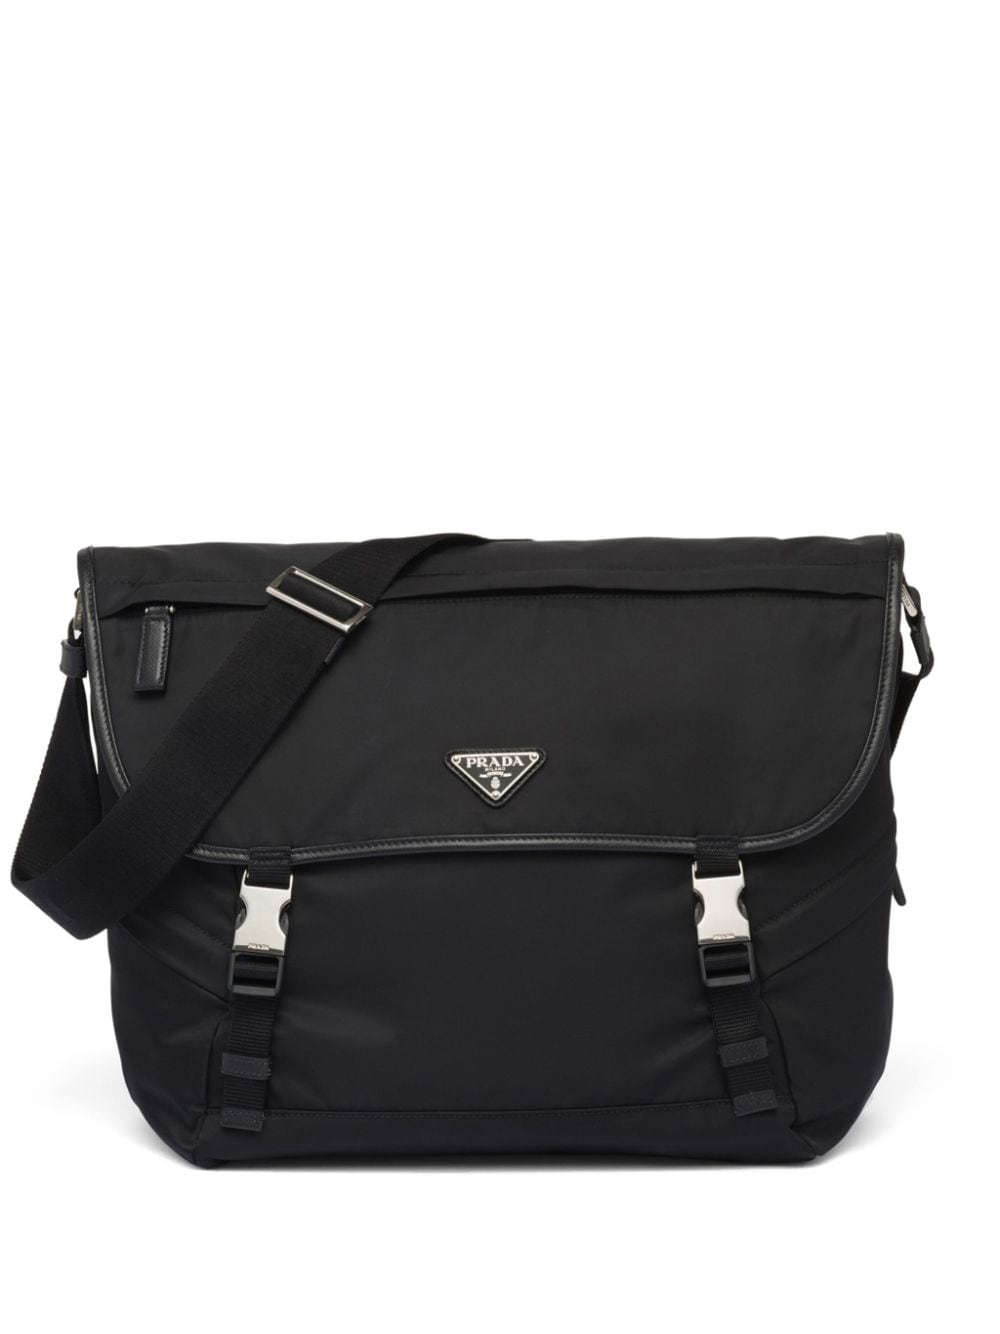 Prada Men's Nylon Messenger Crossbody Bag In Black